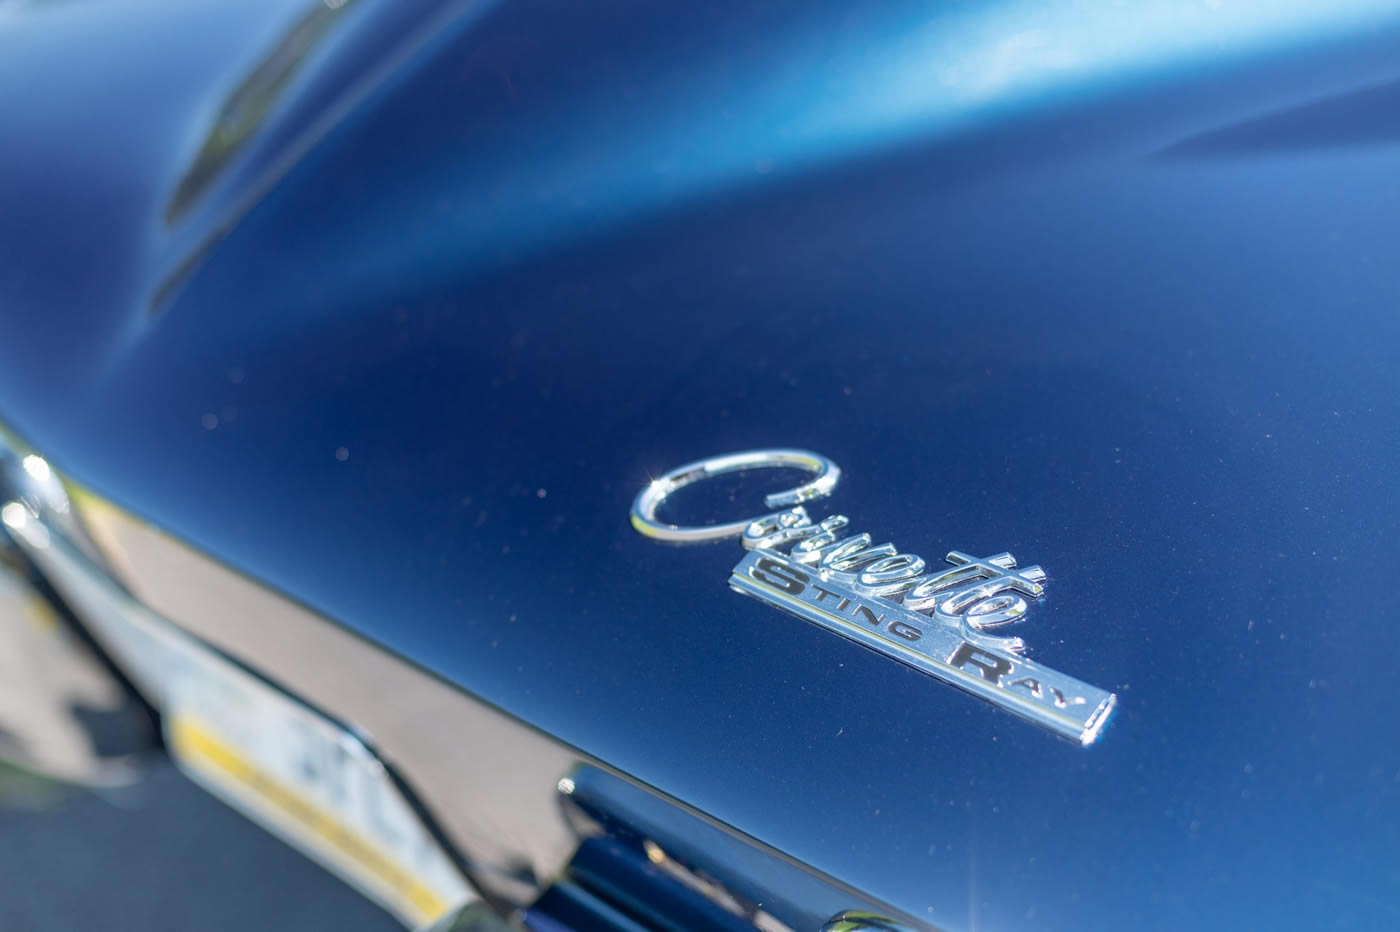 1963 Corvette Split Window Coupe in Datyona Blue